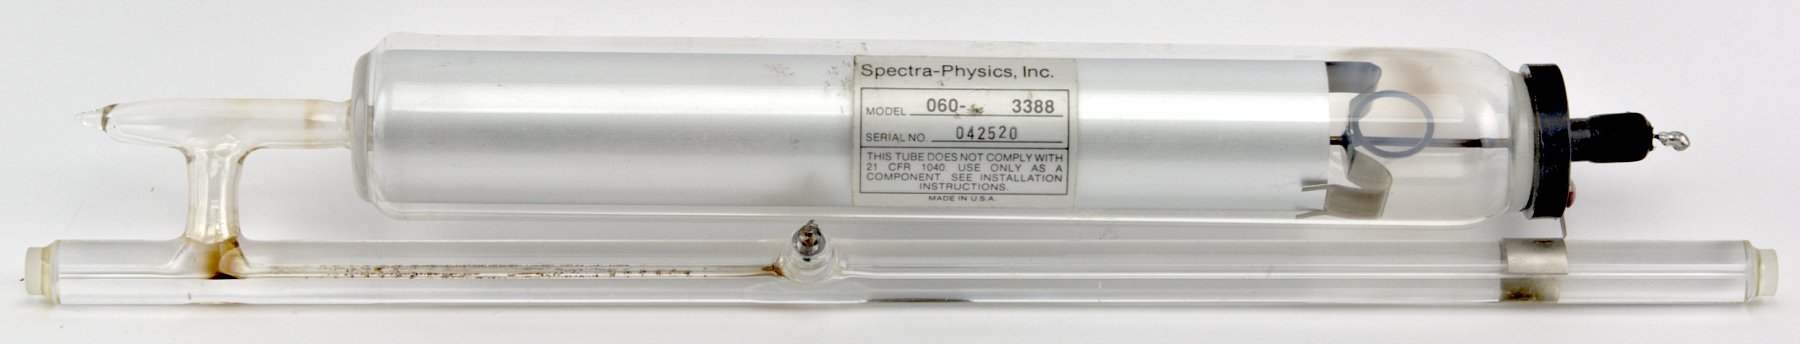 Spectra-Physics He-Ne Laser Tube Model 060-3388